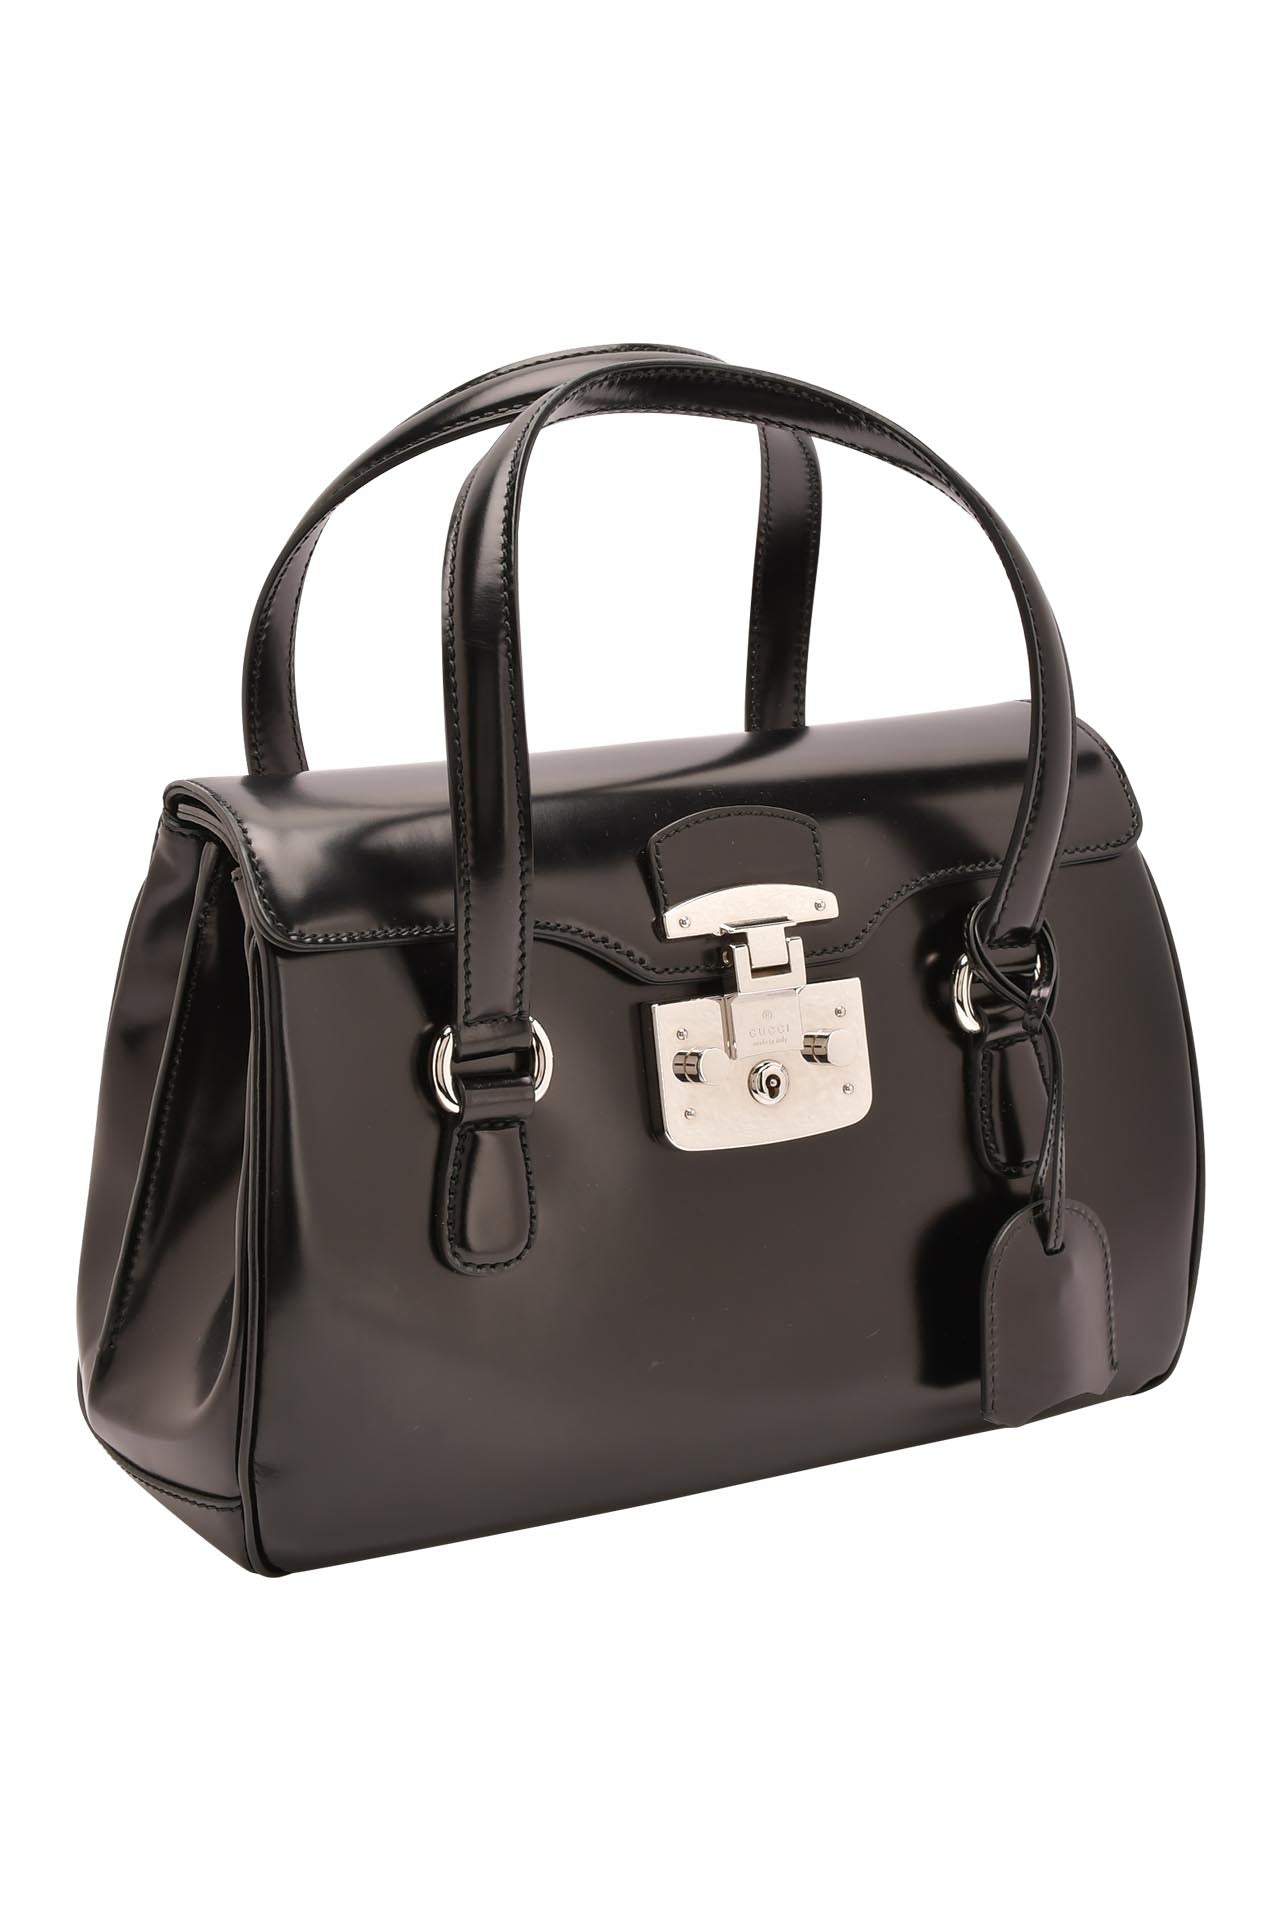 Gucci Caspian Smooth Leather Medium Lady Lock Satchel Bag